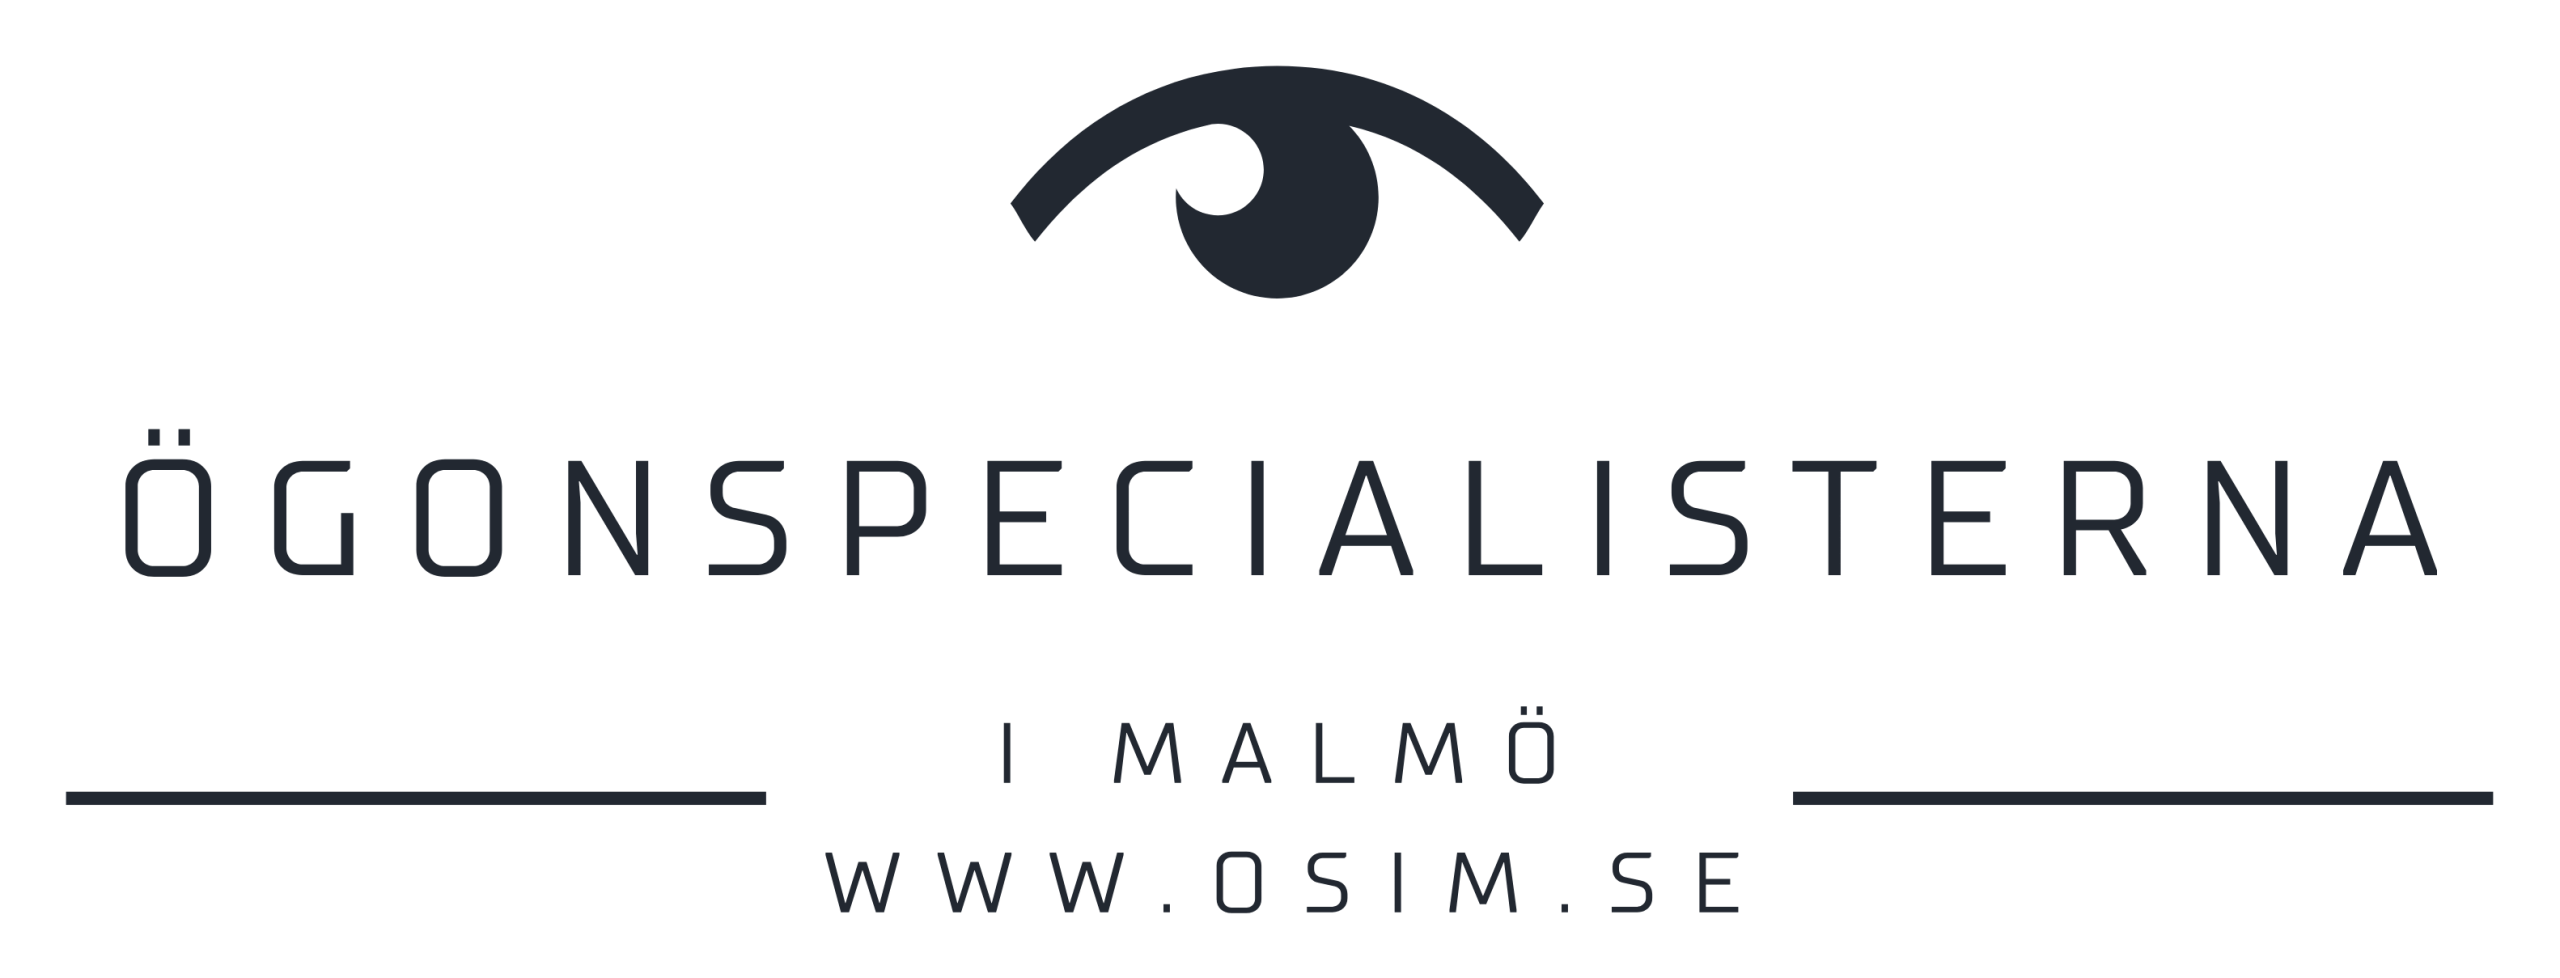 Ögonspecialisterna i Malmö